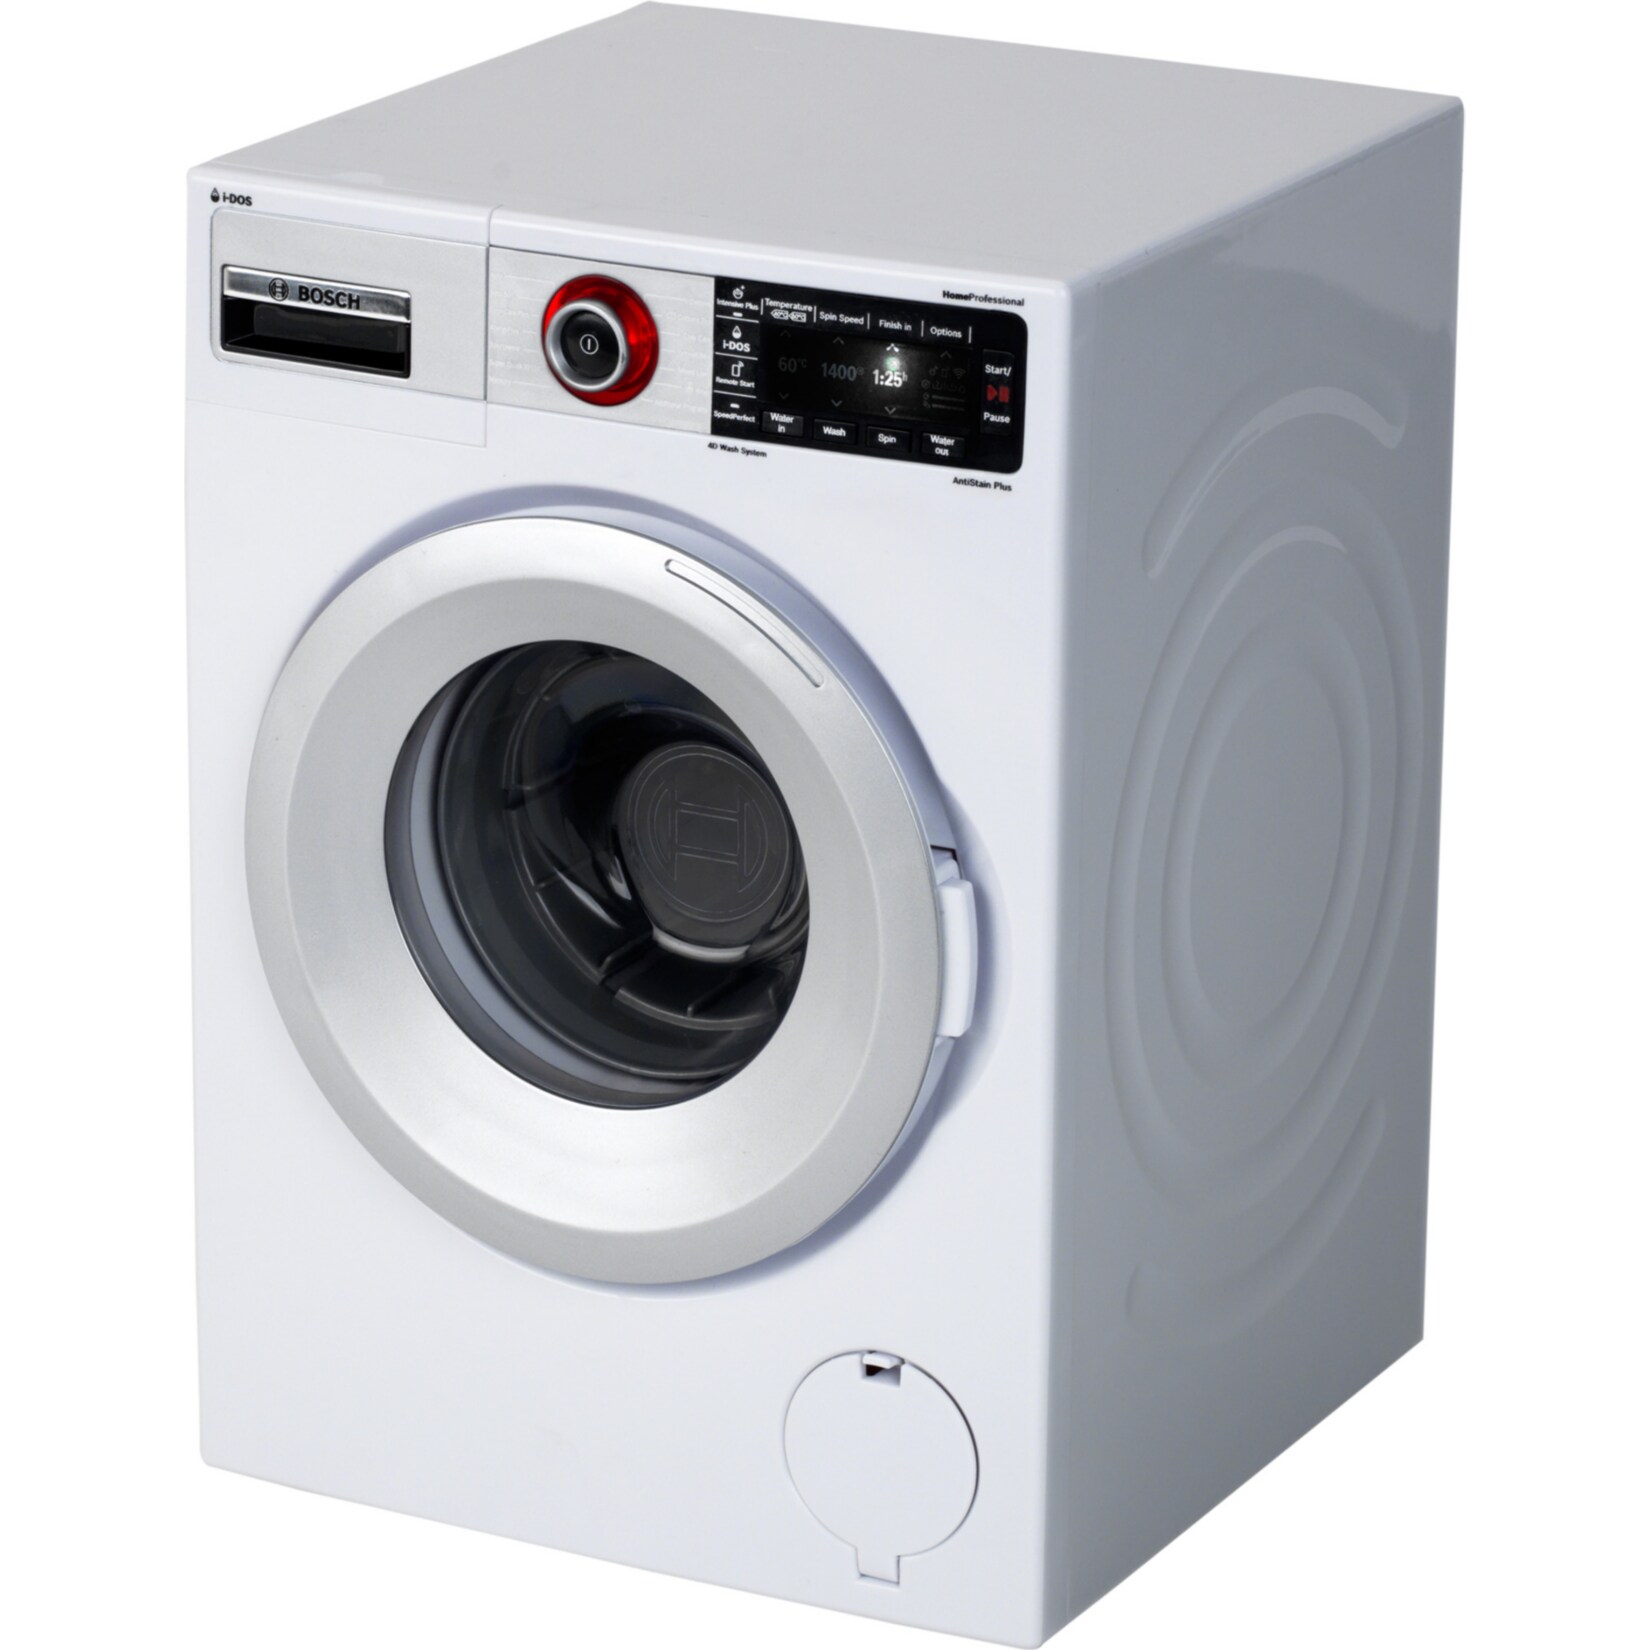 Theo Klein Kinderhaushaltsgerät Bosch Waschmaschine